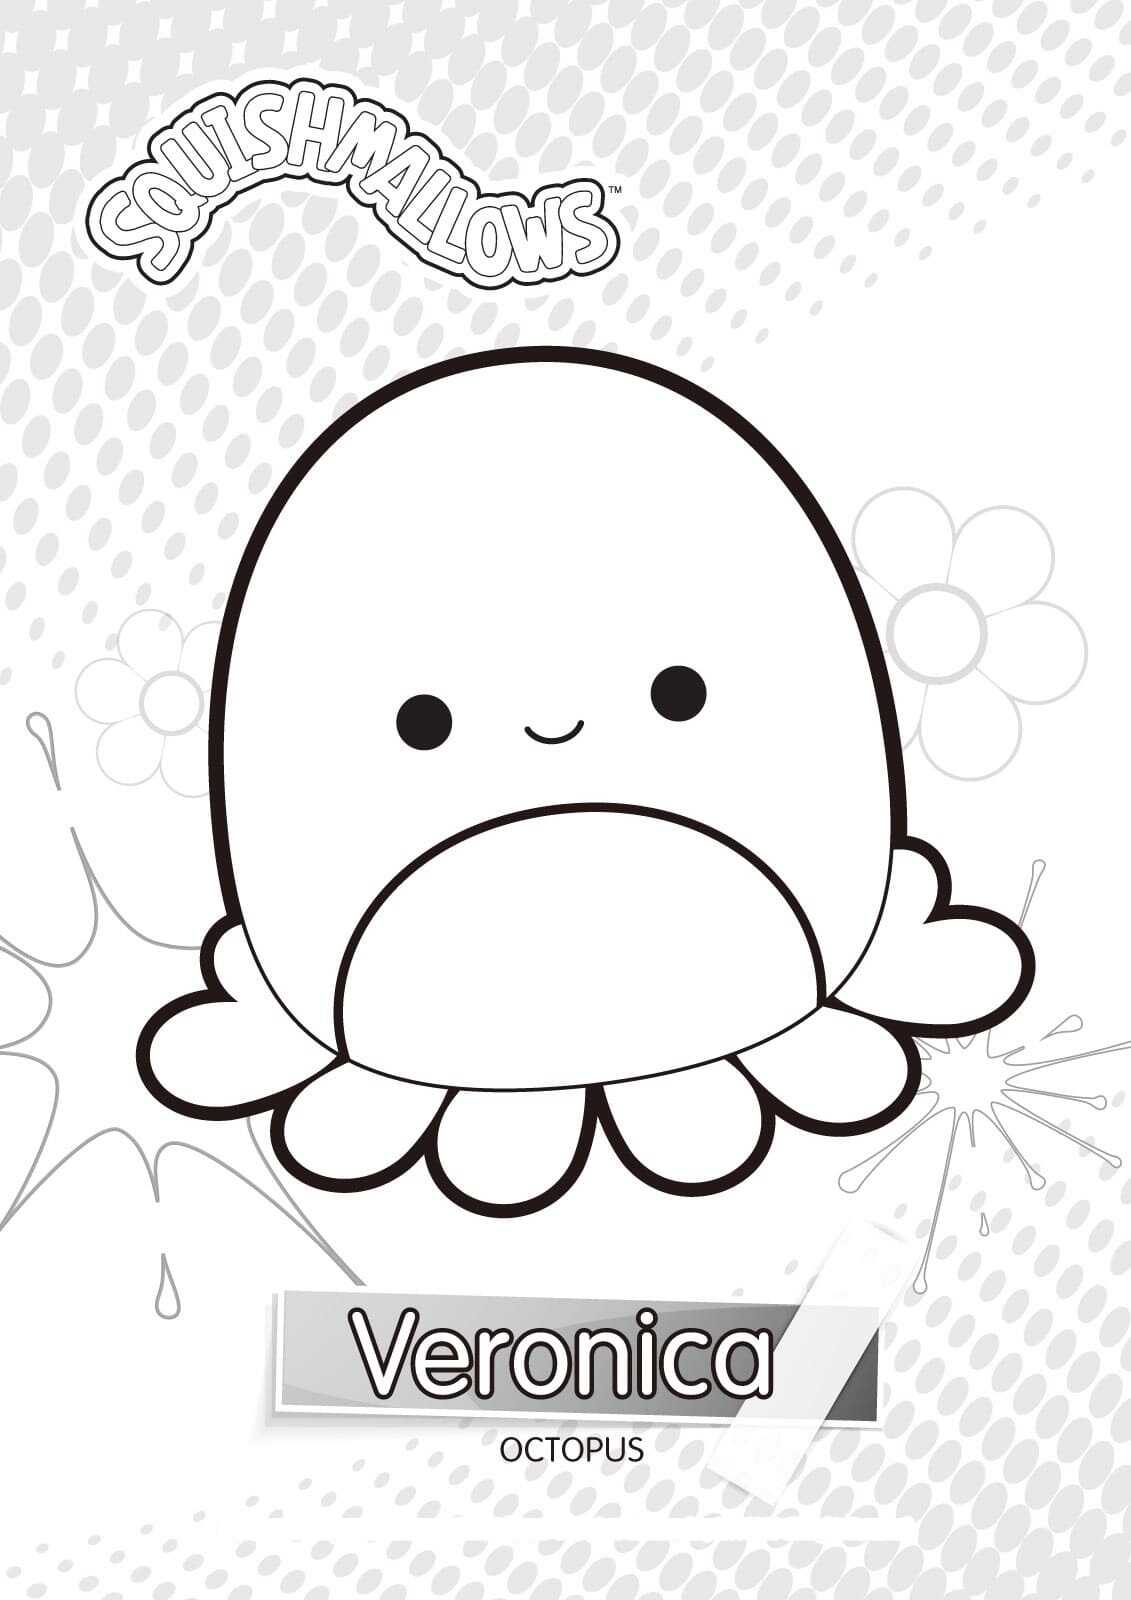 Veronica tomatenroter Oktopus mit weißem Bauch von Squishmallow von Squishmallow